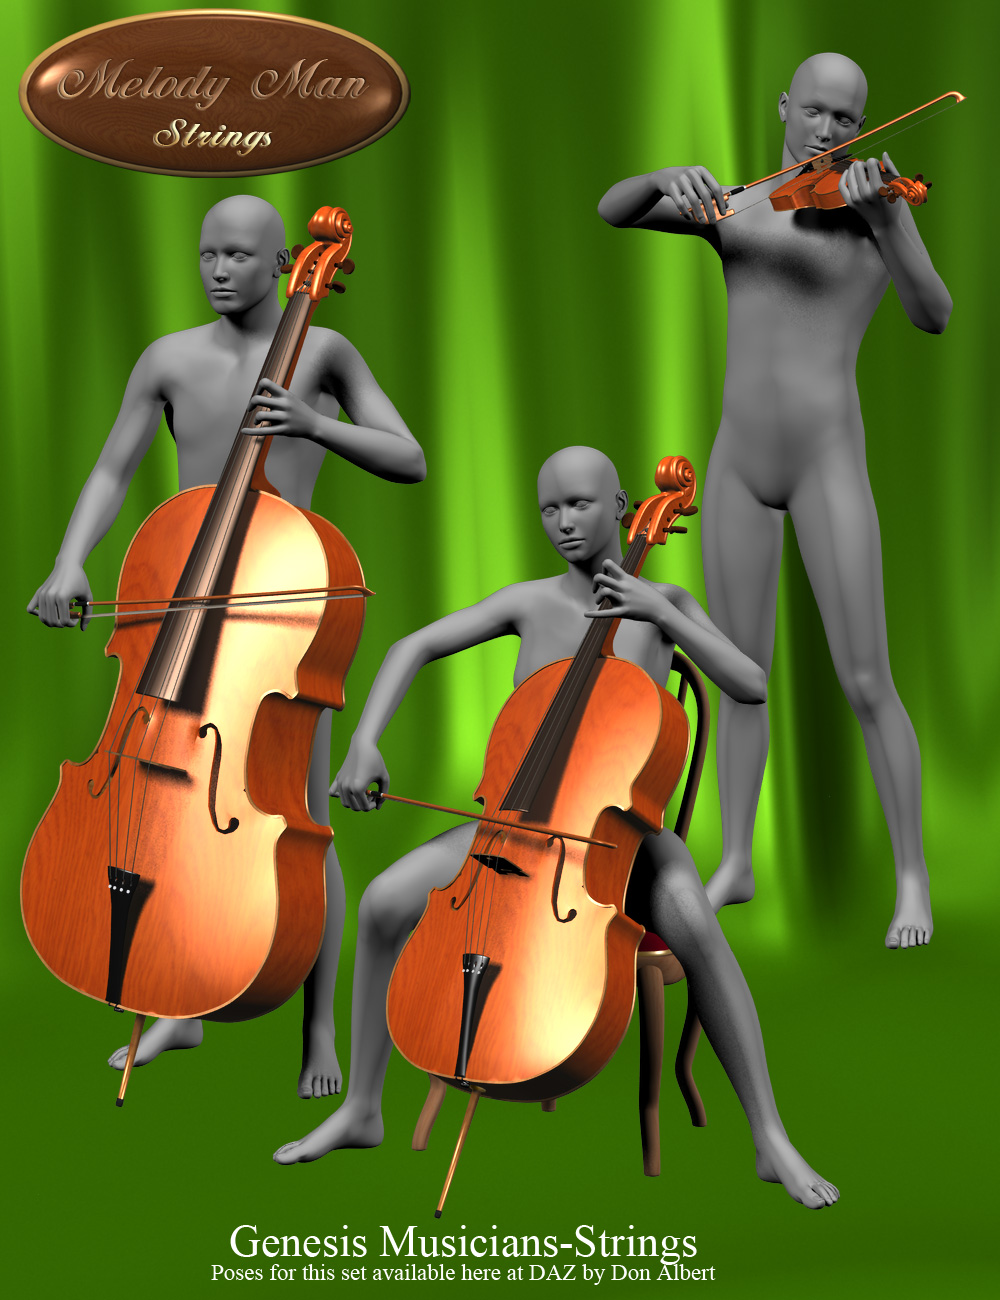 Melody Man Strings by: Don AlbertSimon3D, 3D Models by Daz 3D